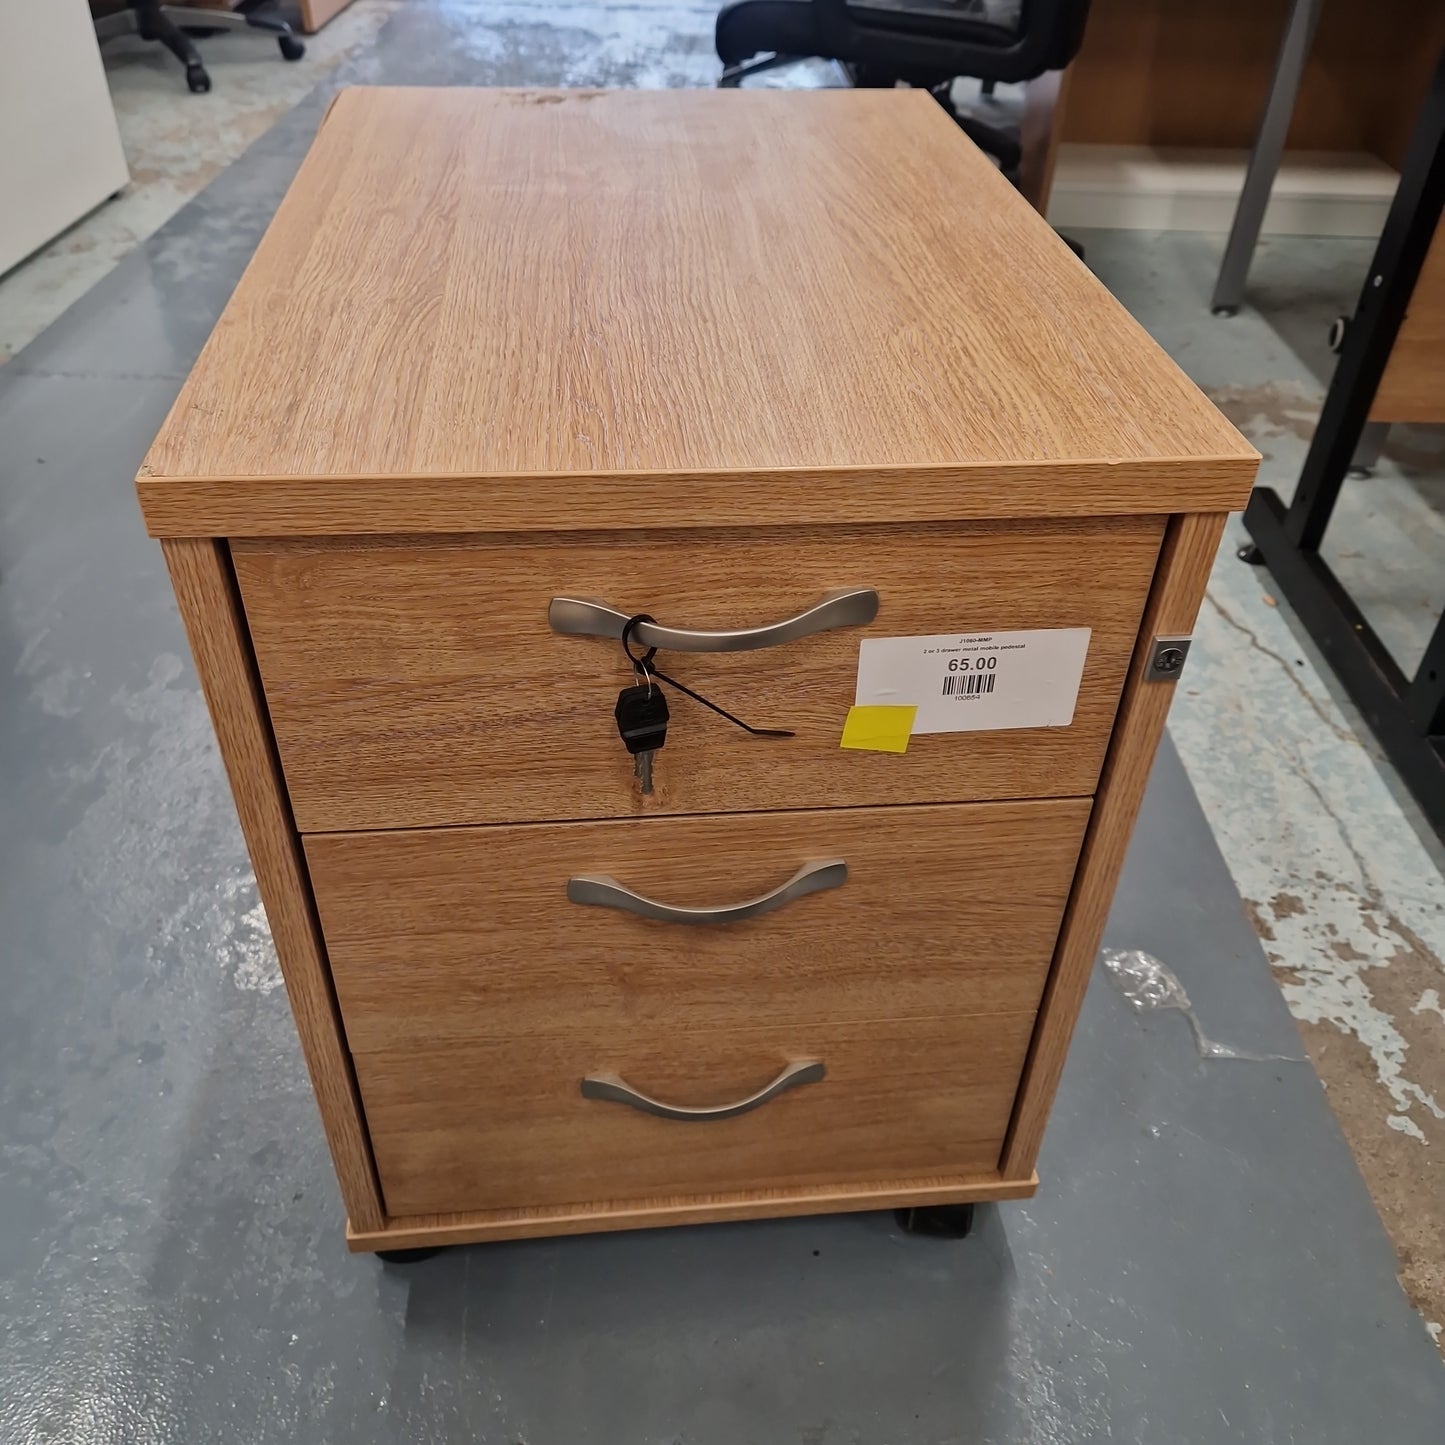 2 or 3 drawer wooden mobile pedestal